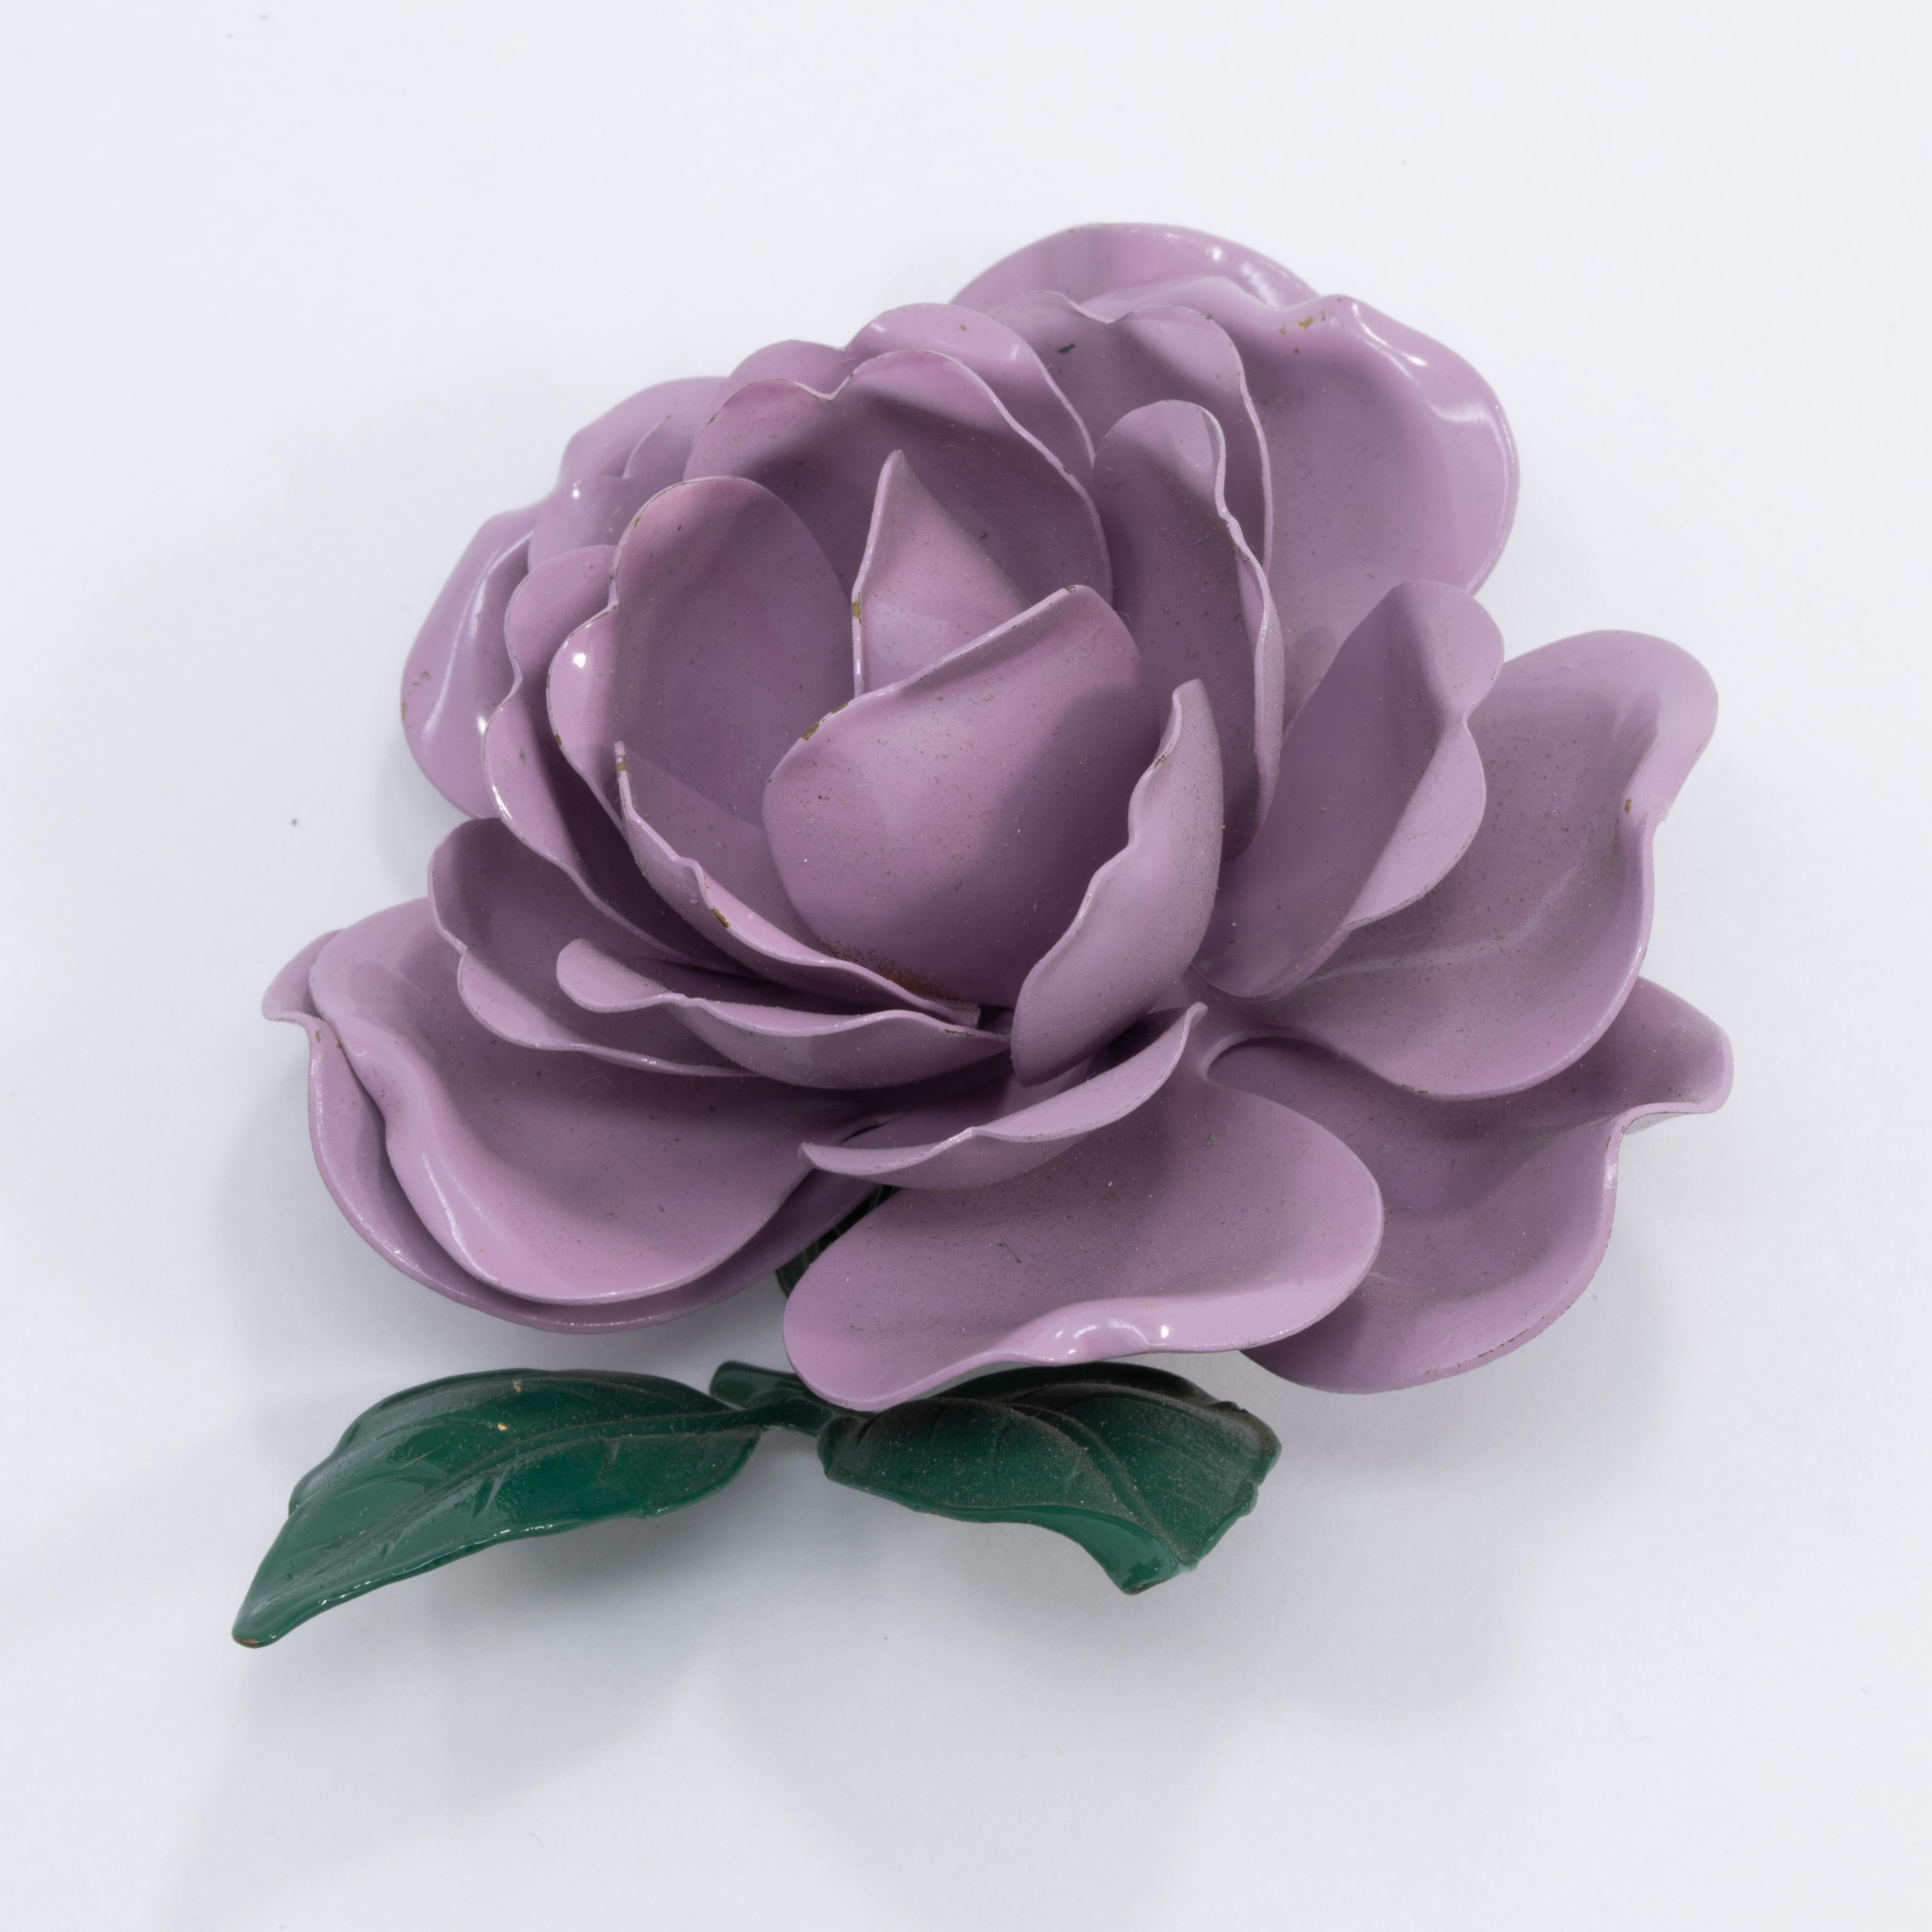 Eine blühende Rose, gemalt in lila und grüner Emaille. Diese stilvolle Ansteckbrosche ist der perfekte Hauch von Retro-Flair!

Gold-Ton.

